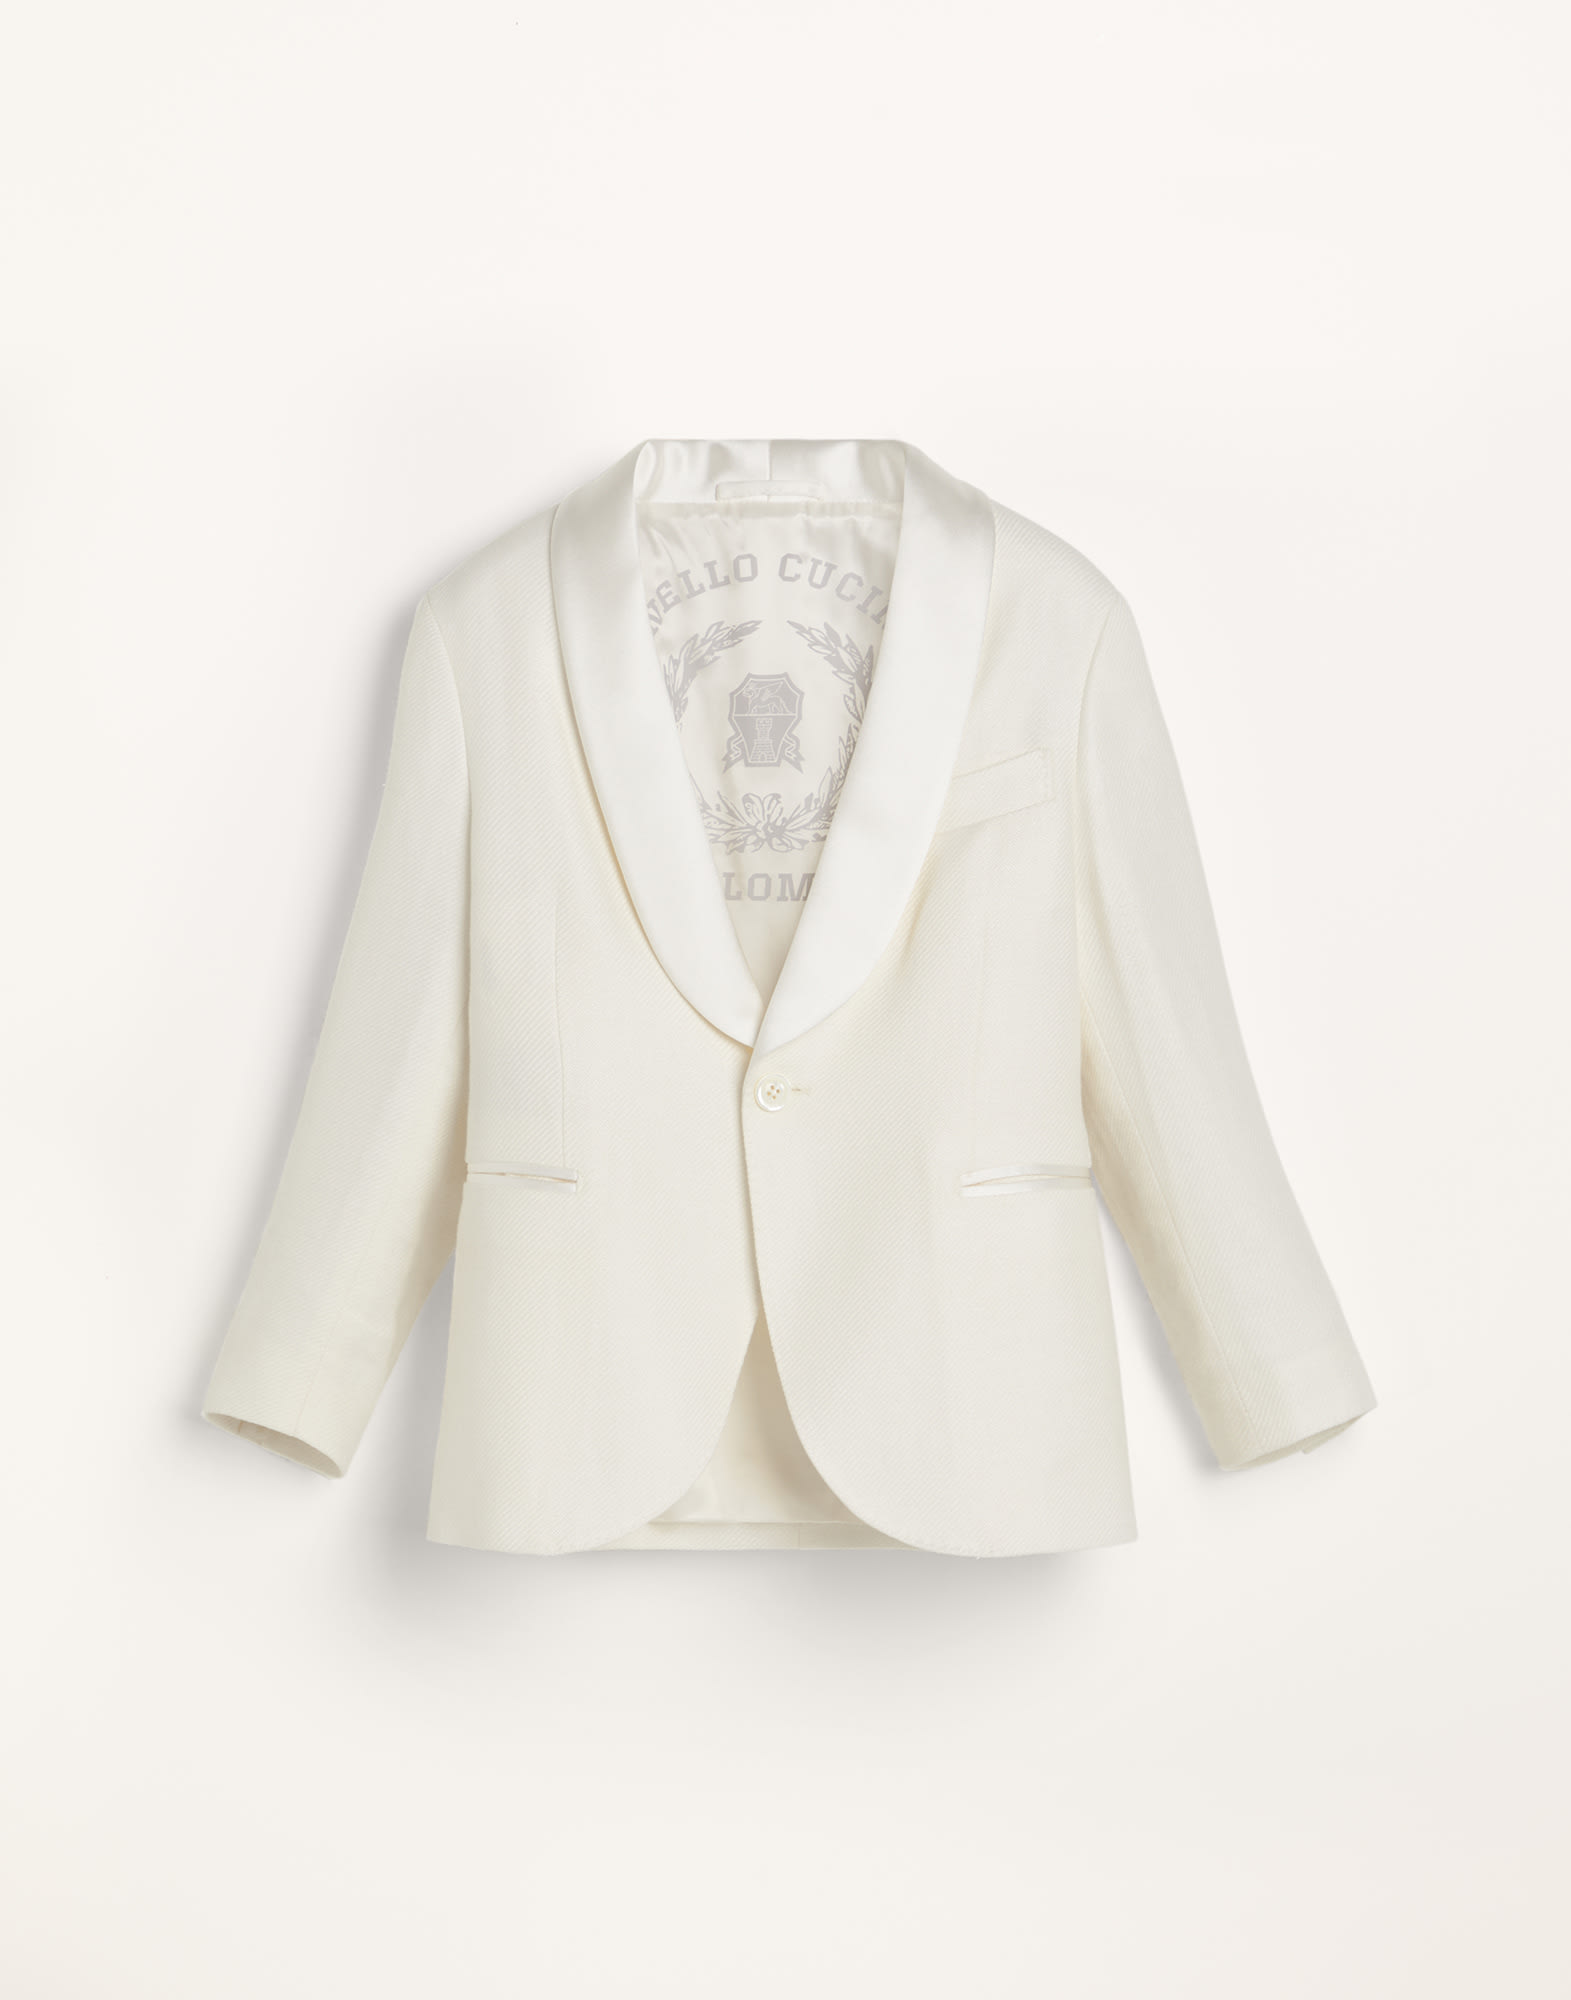 Пиджак для смокинга Белый с Сероватым Оттенком Мальчики - Brunello Cucinelli